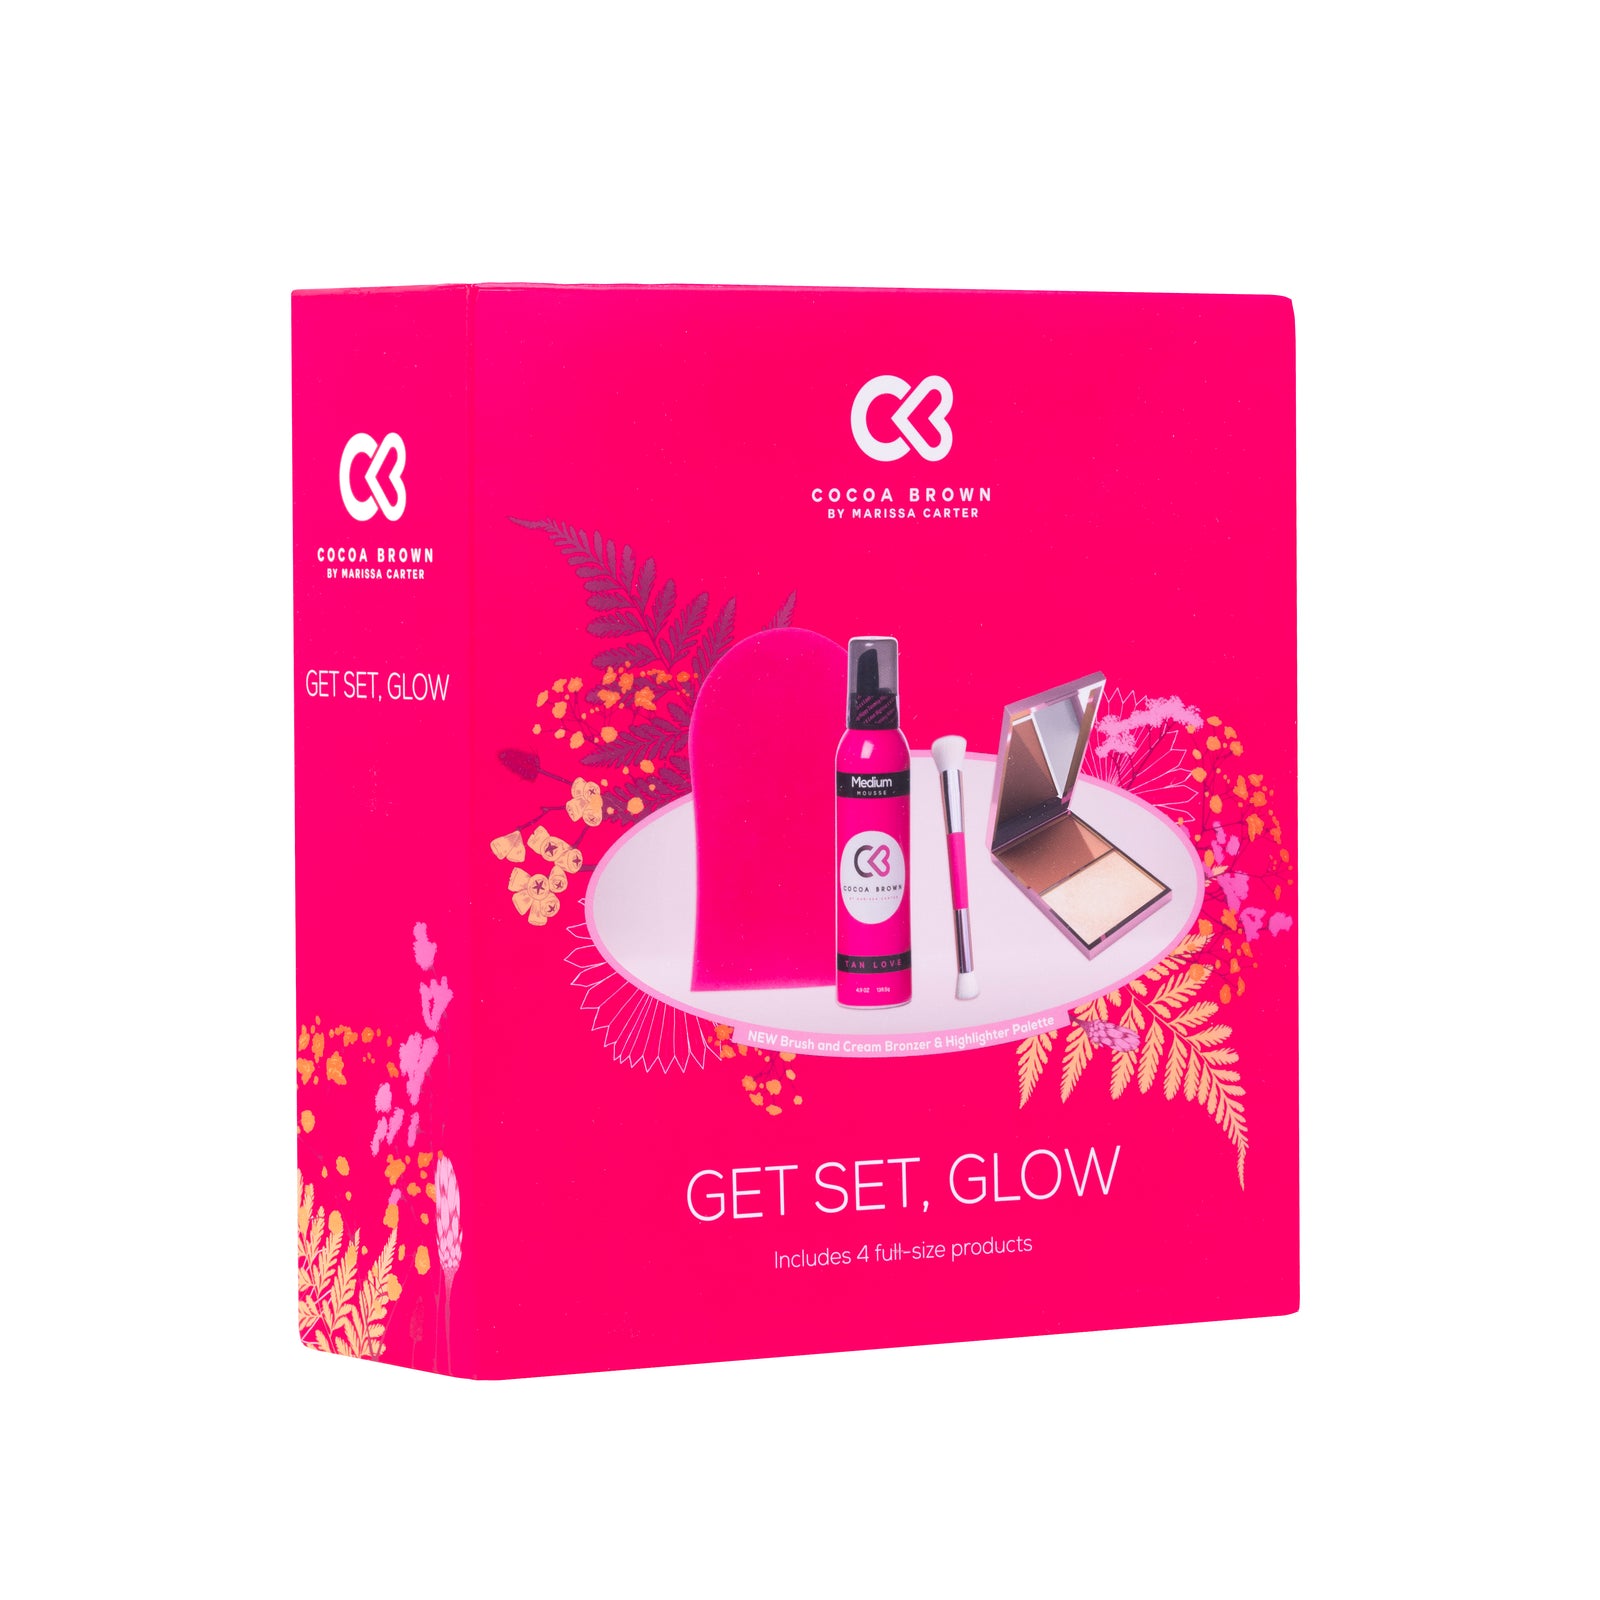 Get Set, Glow Tanning Gift Set